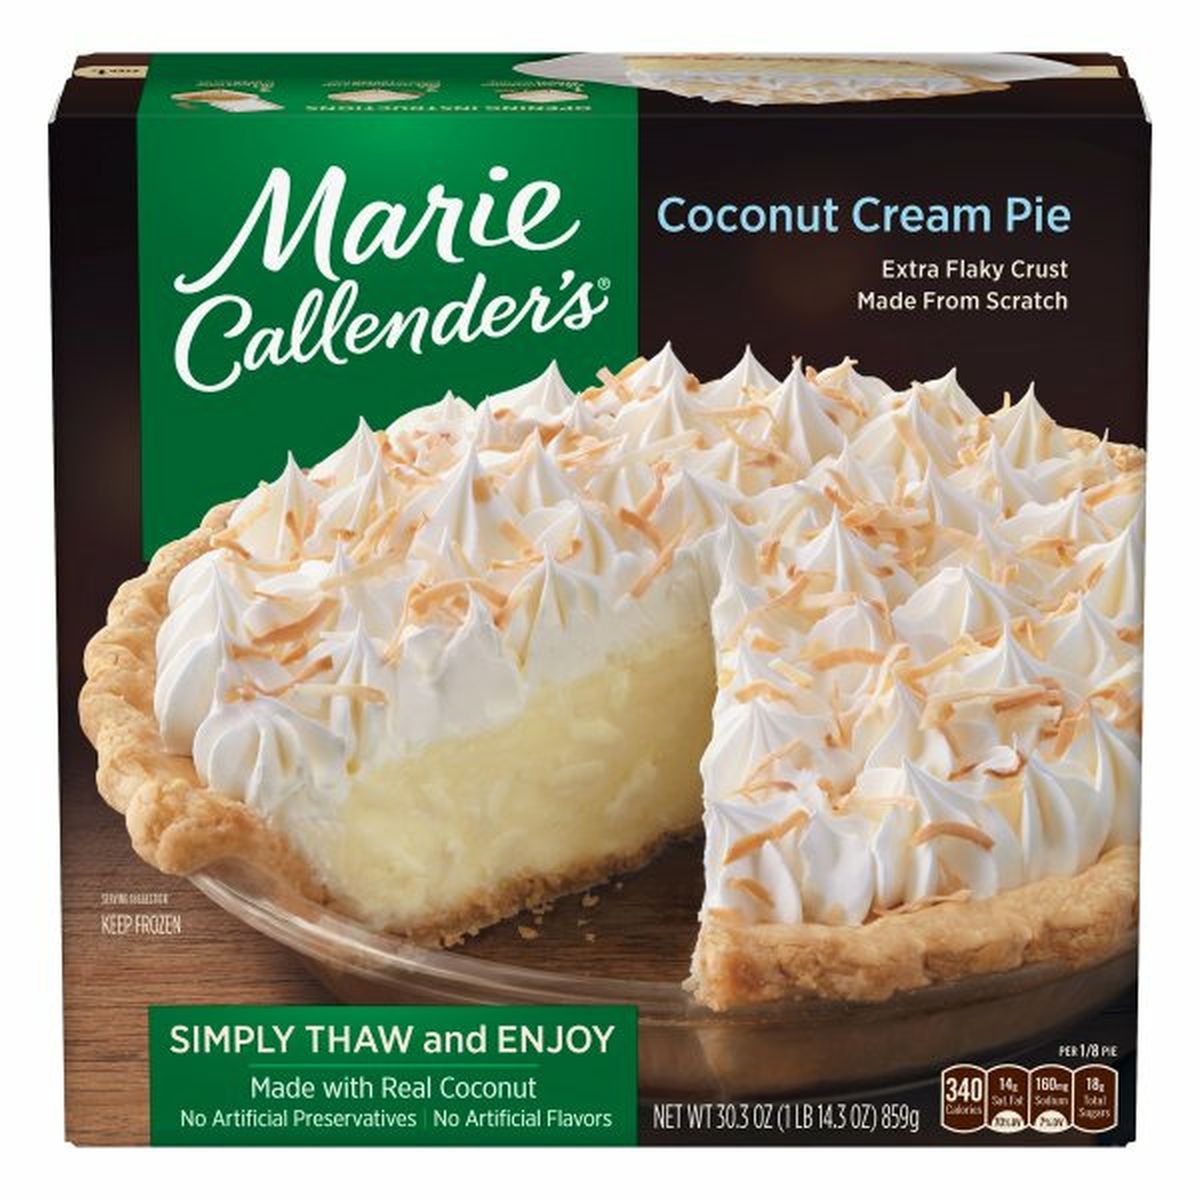 Calories in Marie Callender's Coconut Cream Pie